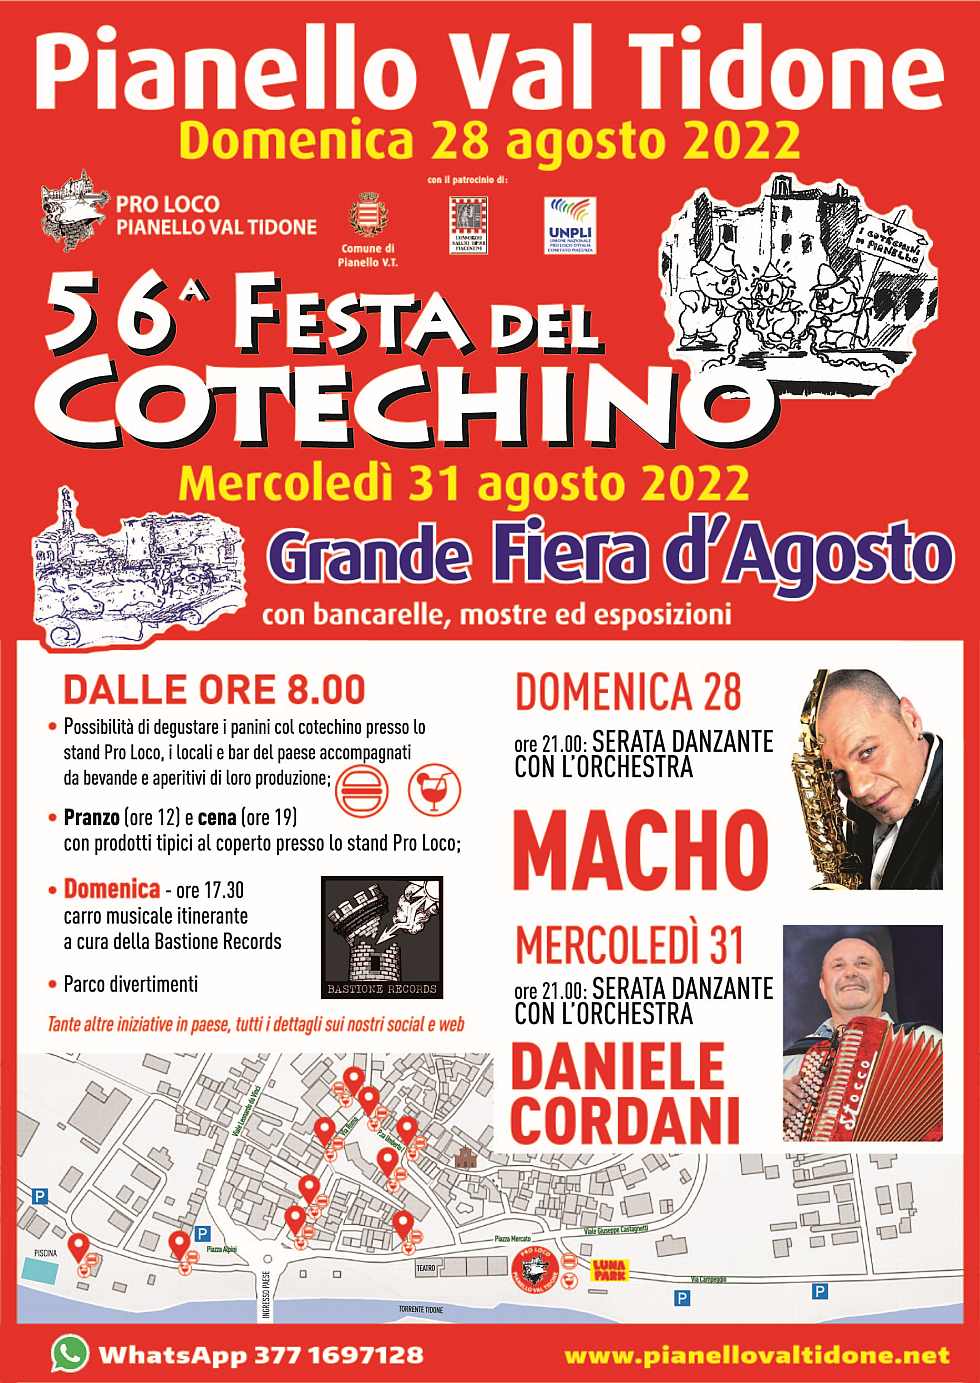 Pianello Val Tidone (PC)
"56^ Festa del Cotechino e Grande Fiera d'Agosto"
28 e 31 Agosto 2022